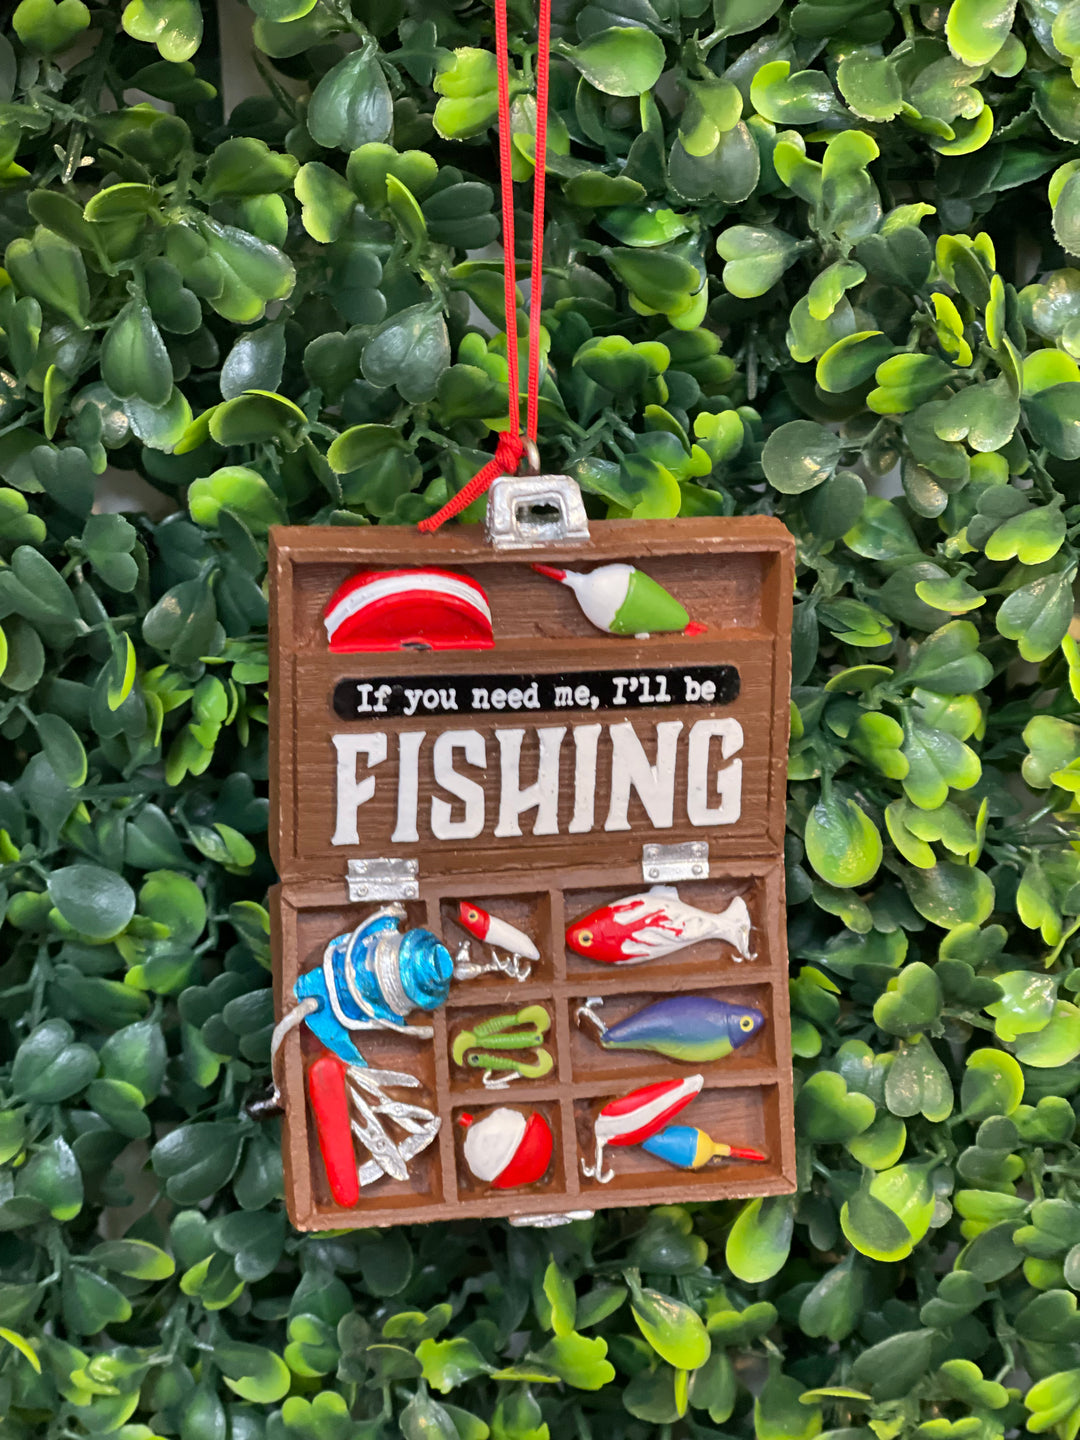 Fishing Tackle Box Ornament